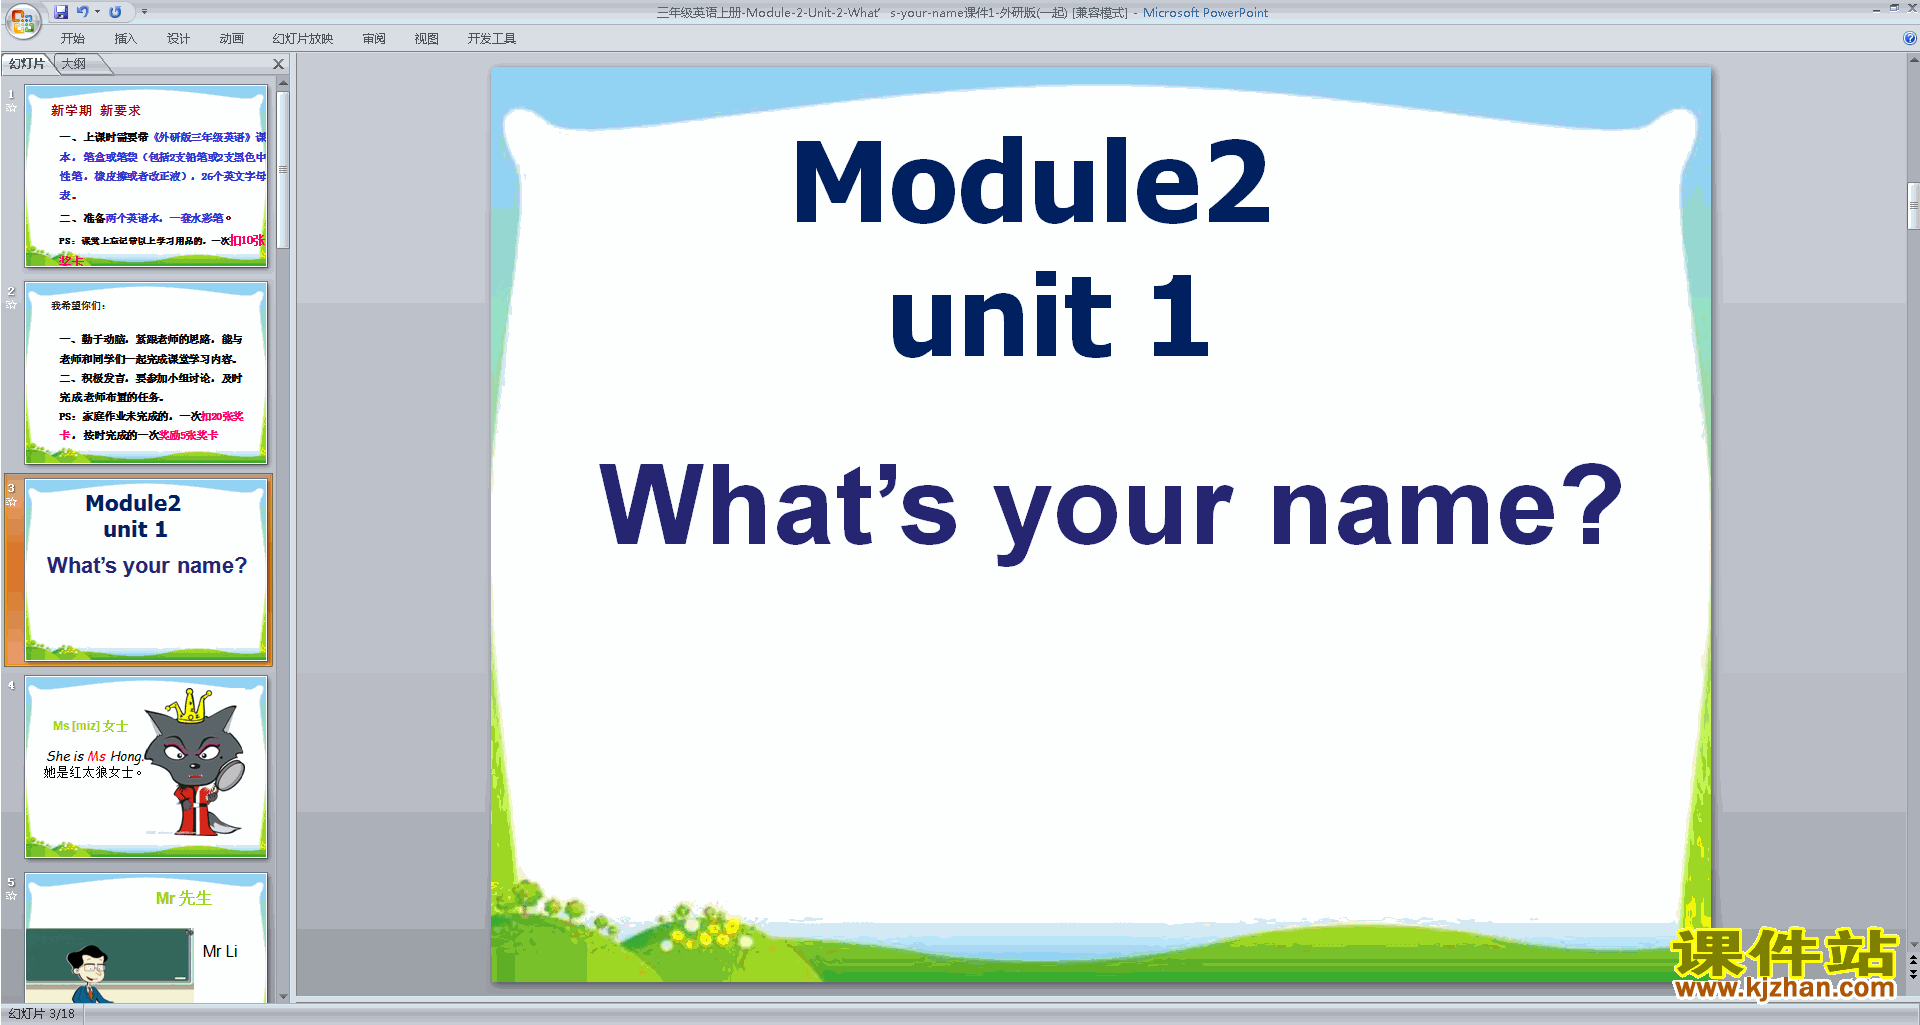 Module2 Unit2 What